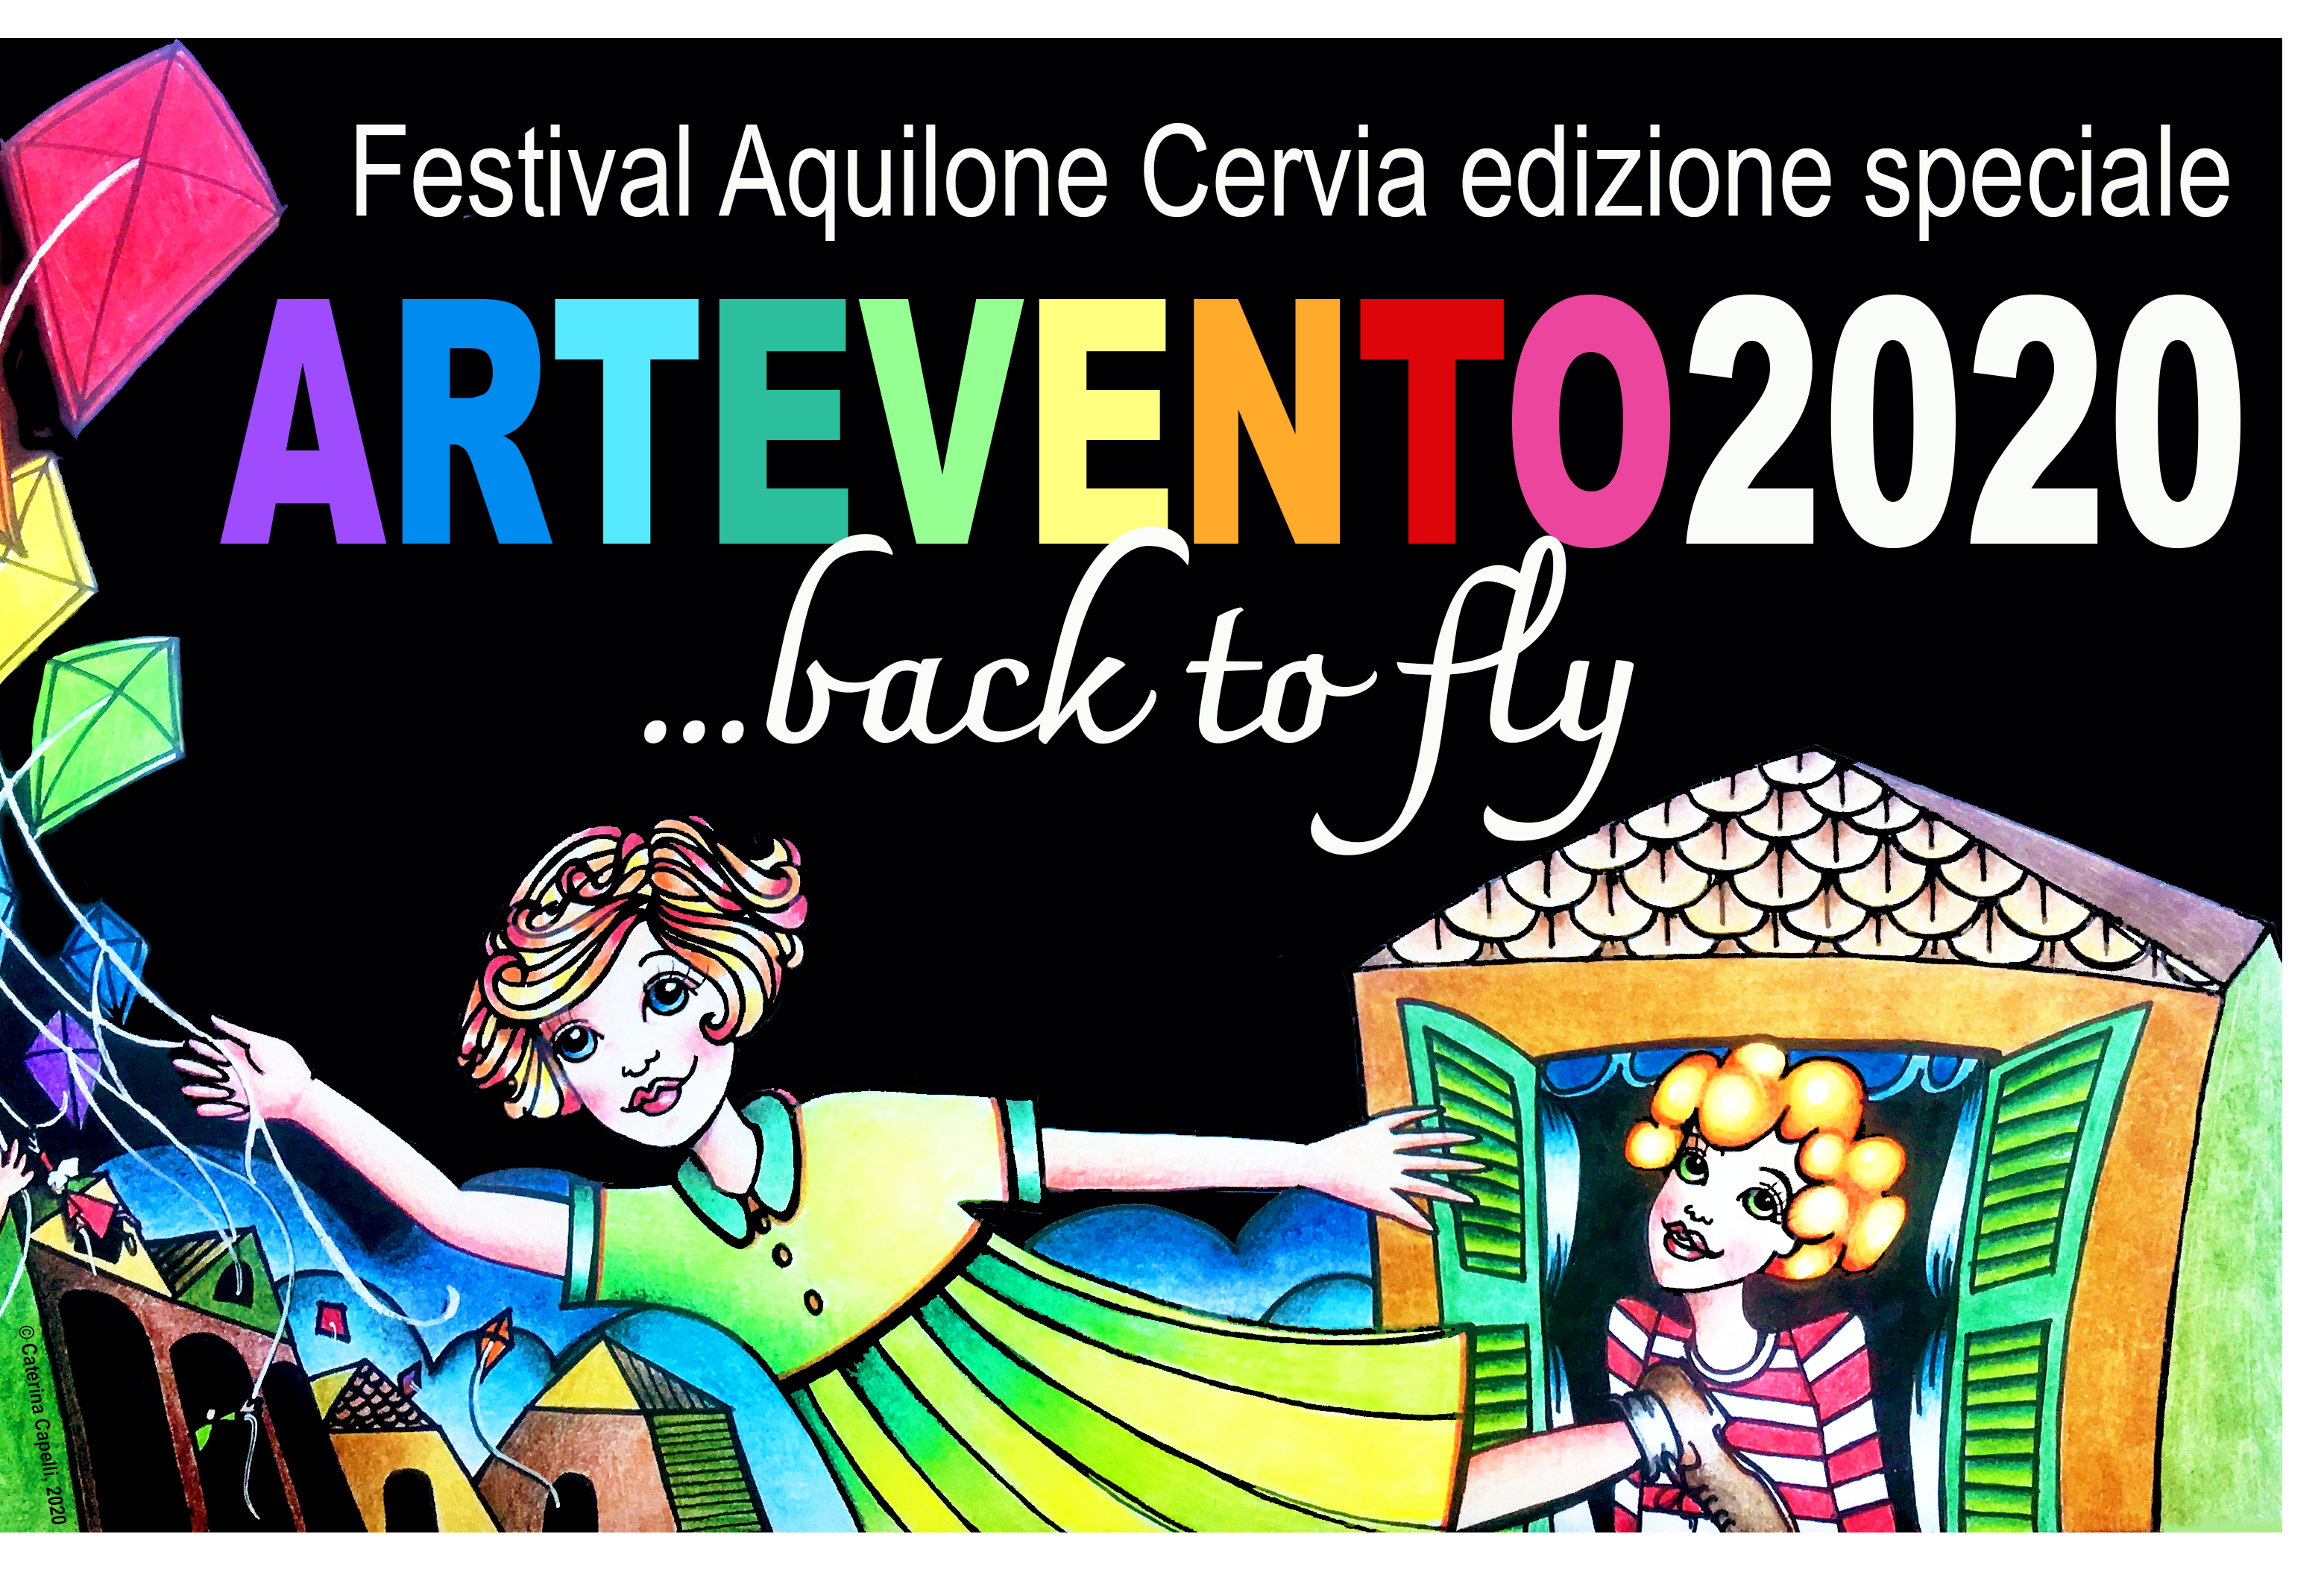 ARTEVENTO Festival dell’Aquilone Cervia (Ra)